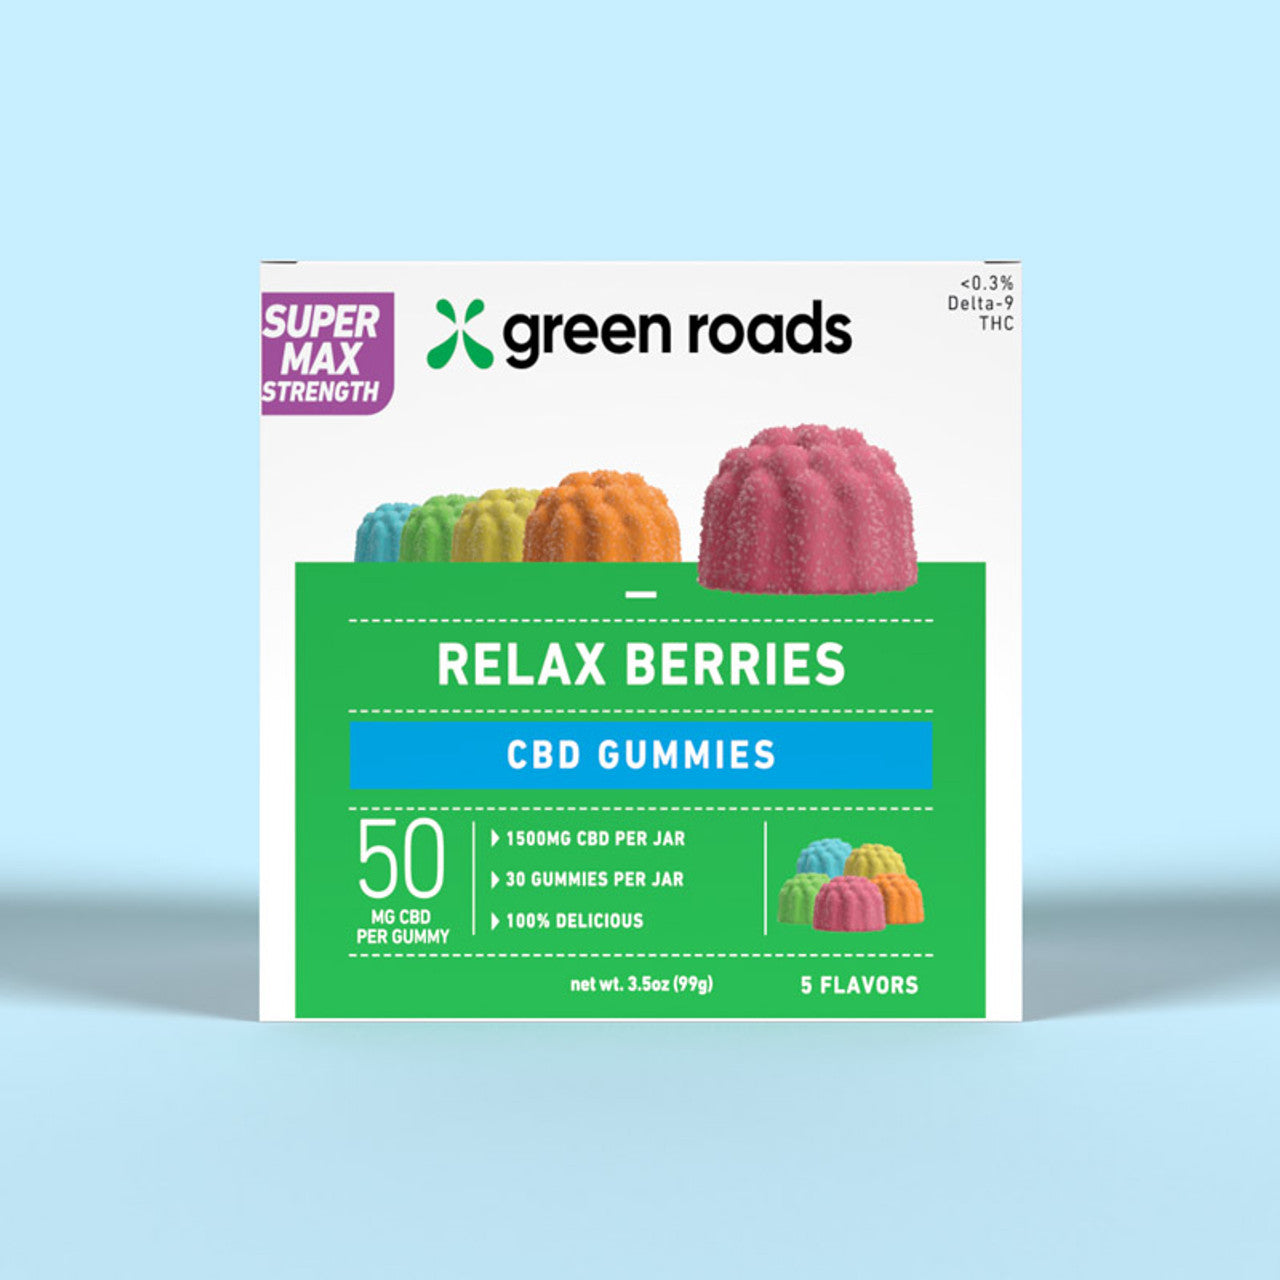 Super Max Strength CBD Relax Berries - (30ct) 1,500mg Best Price